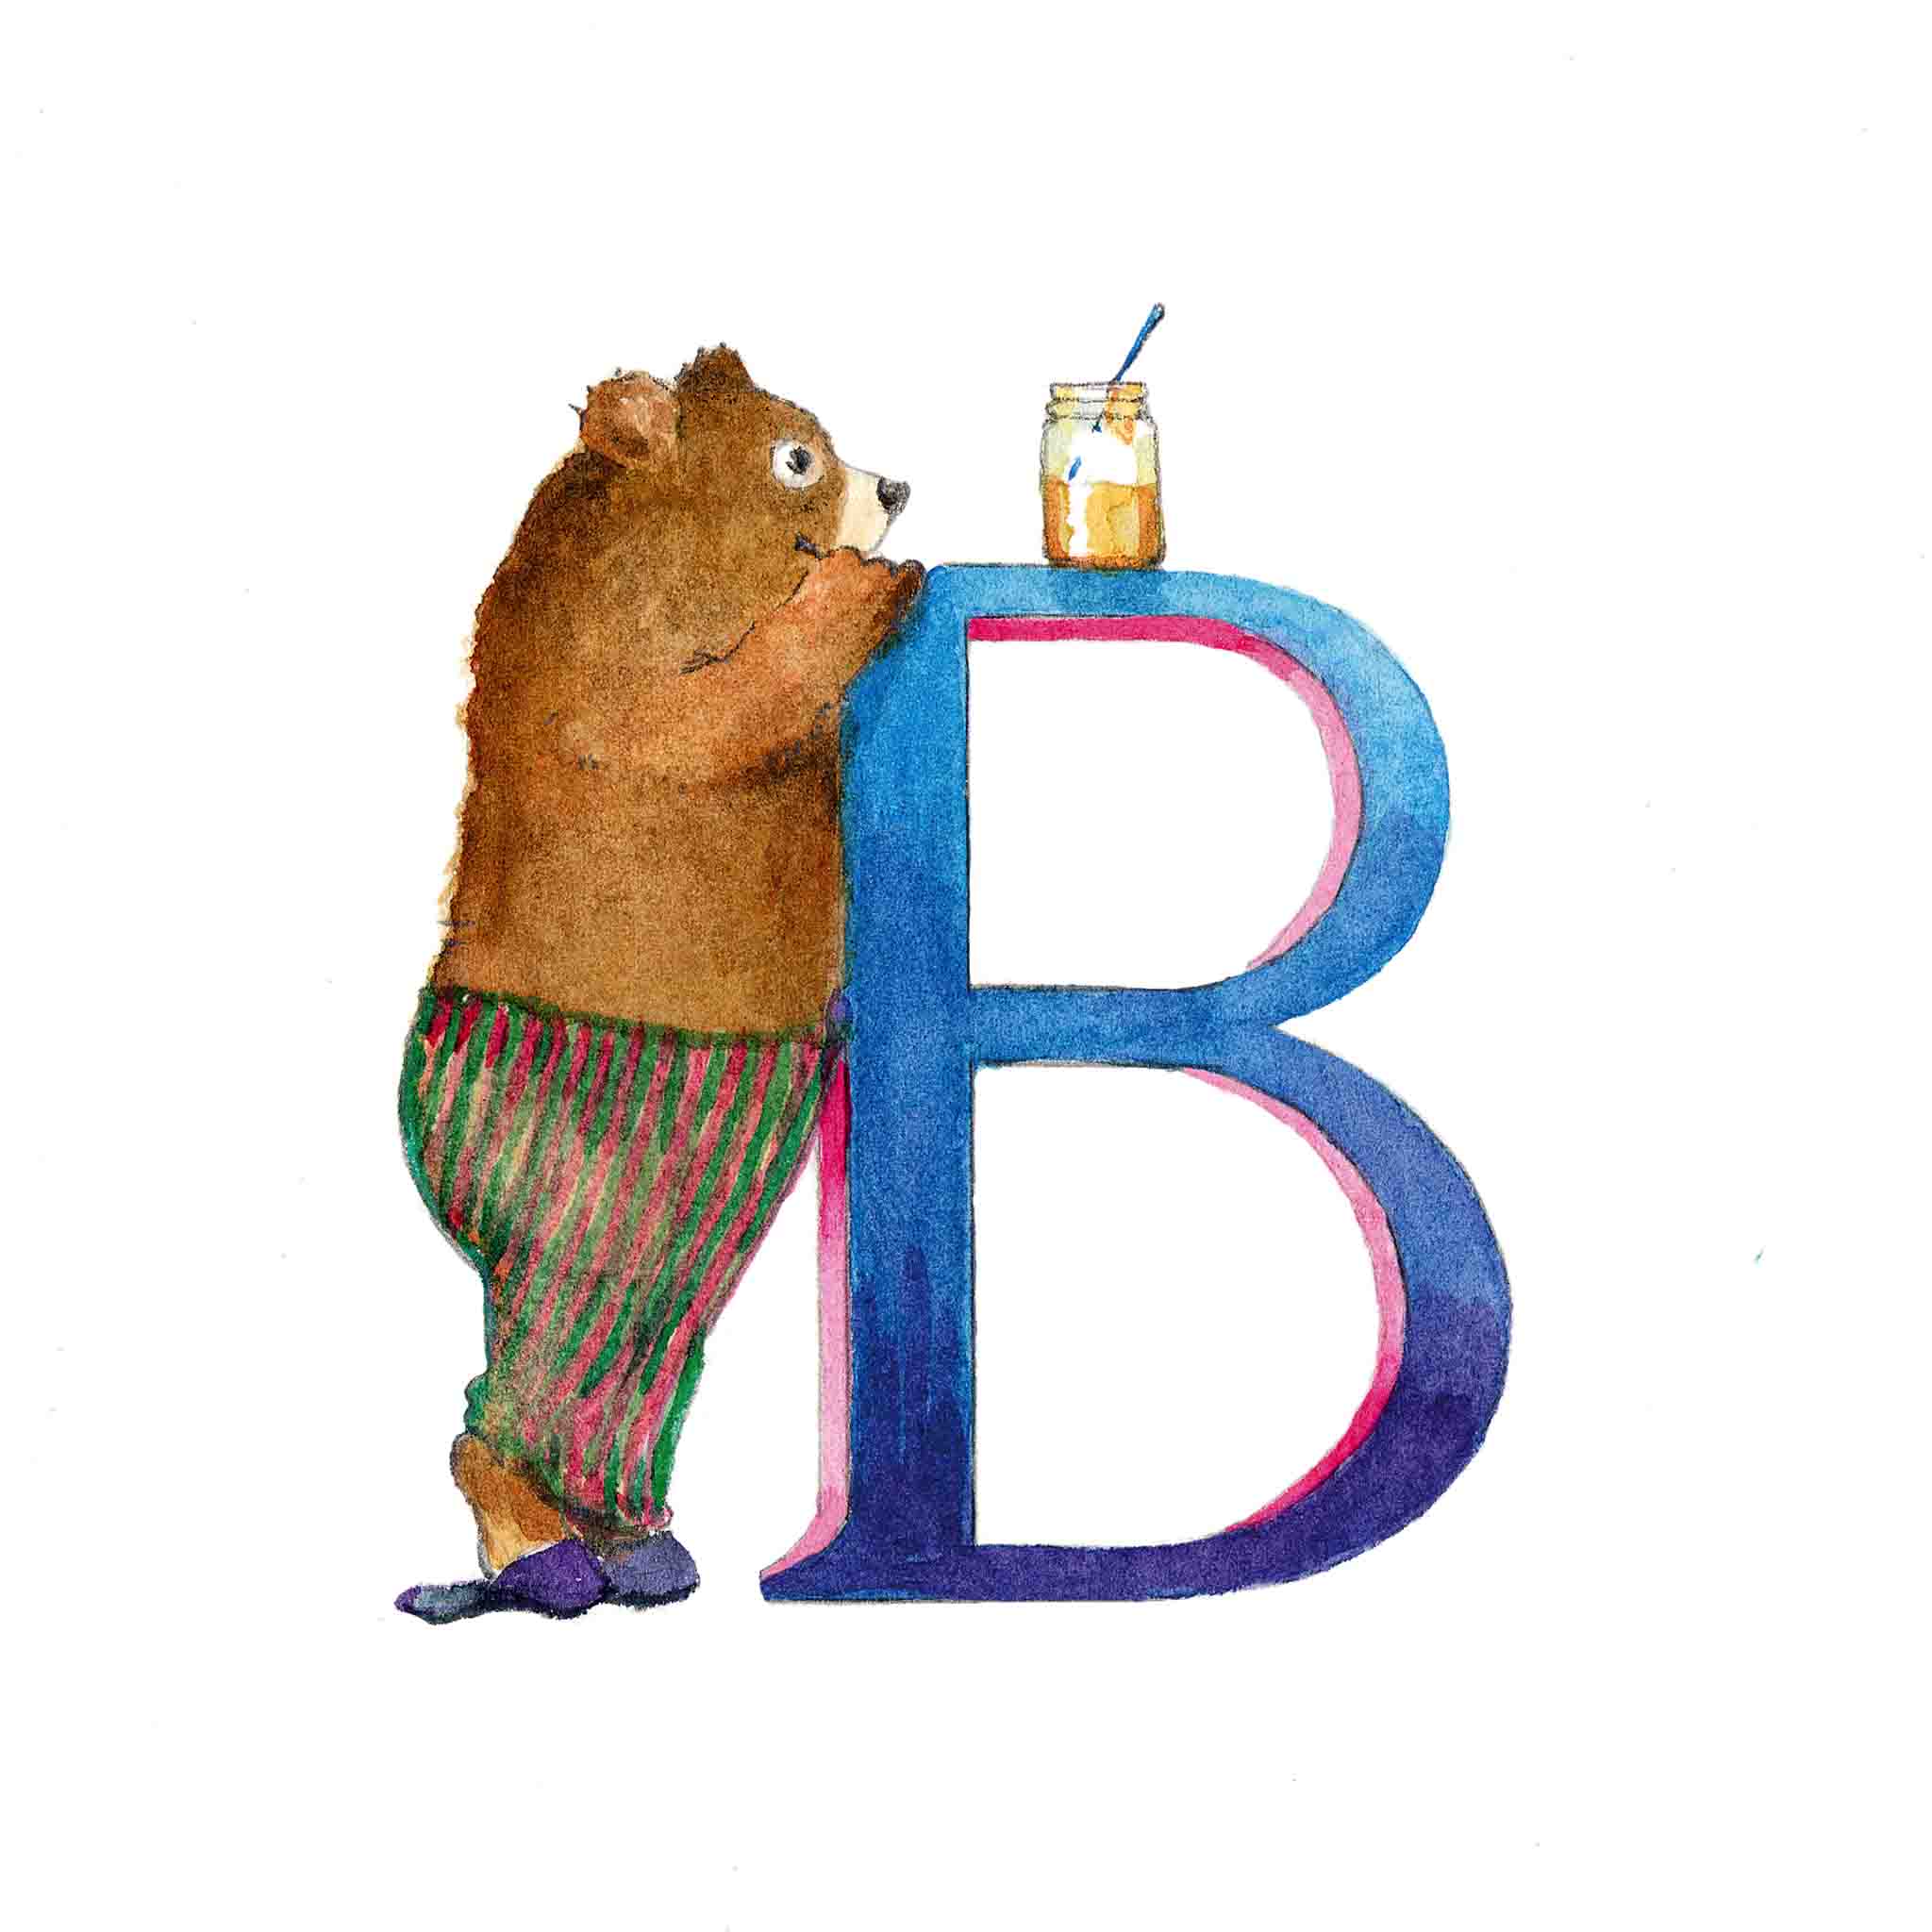 B for Bear